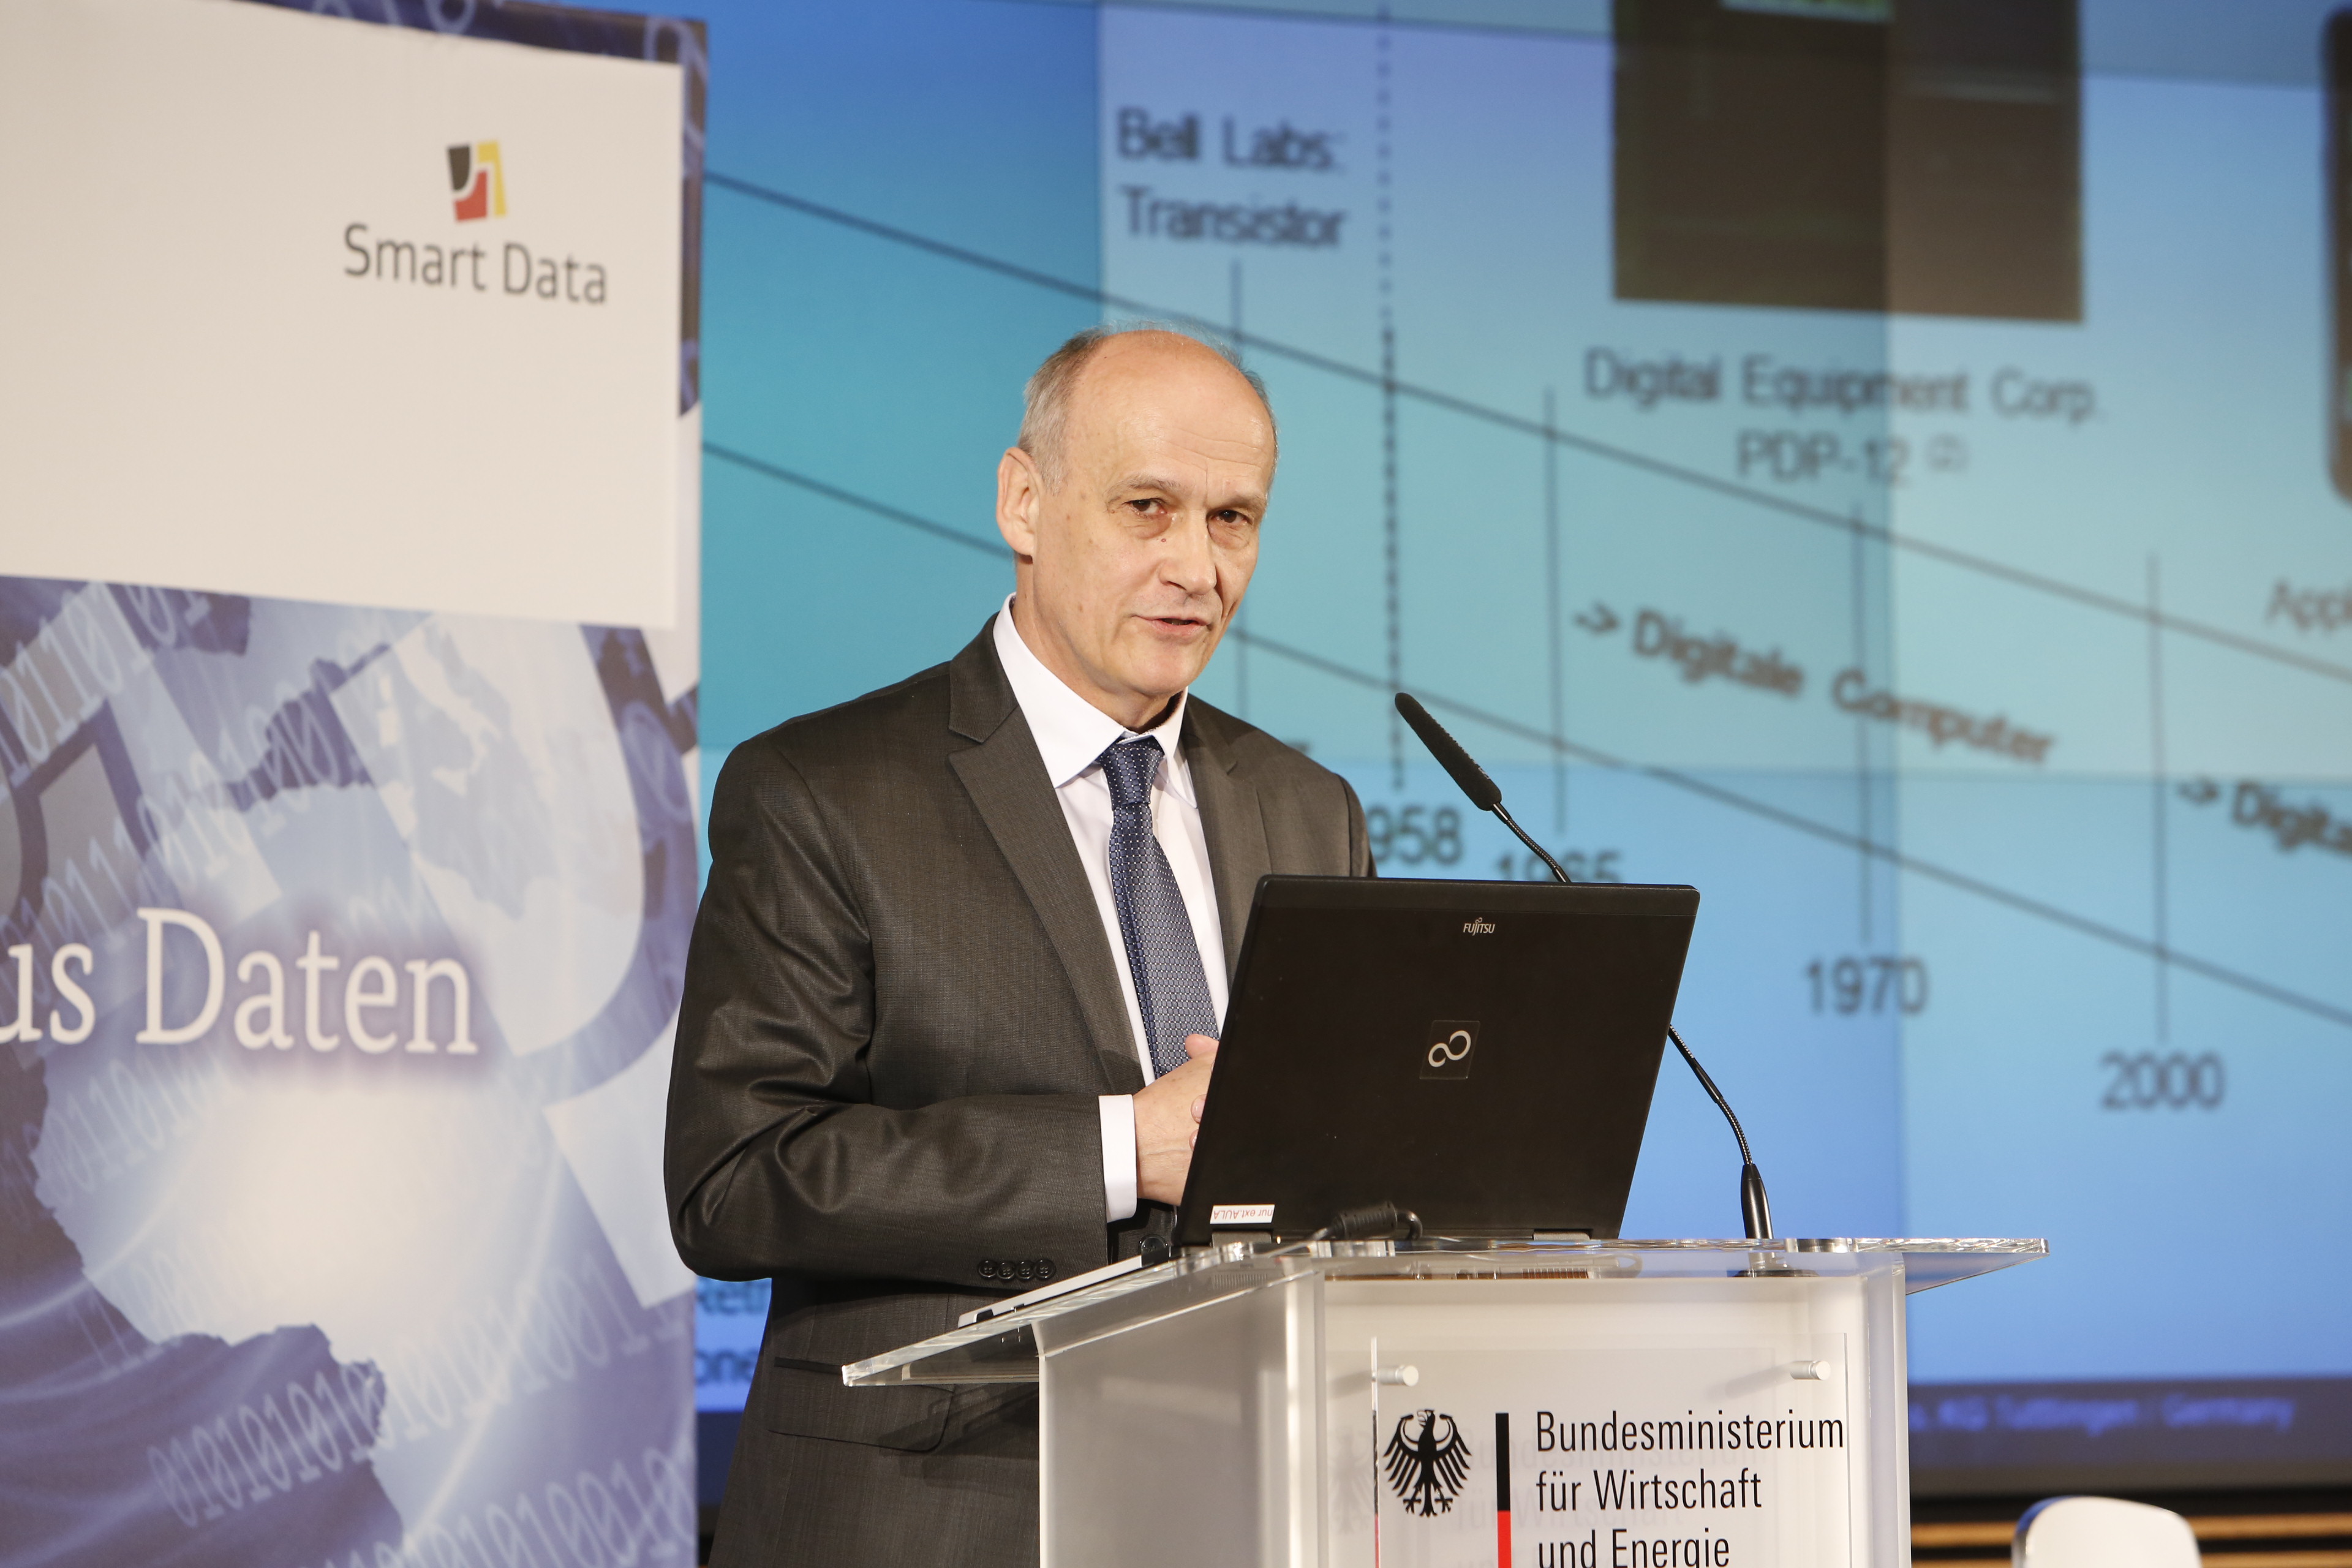 Dr Klaus Irion von Storz bei seiner Keynote auf der Smart-Data-Konferenz steht an einem Rednerpult